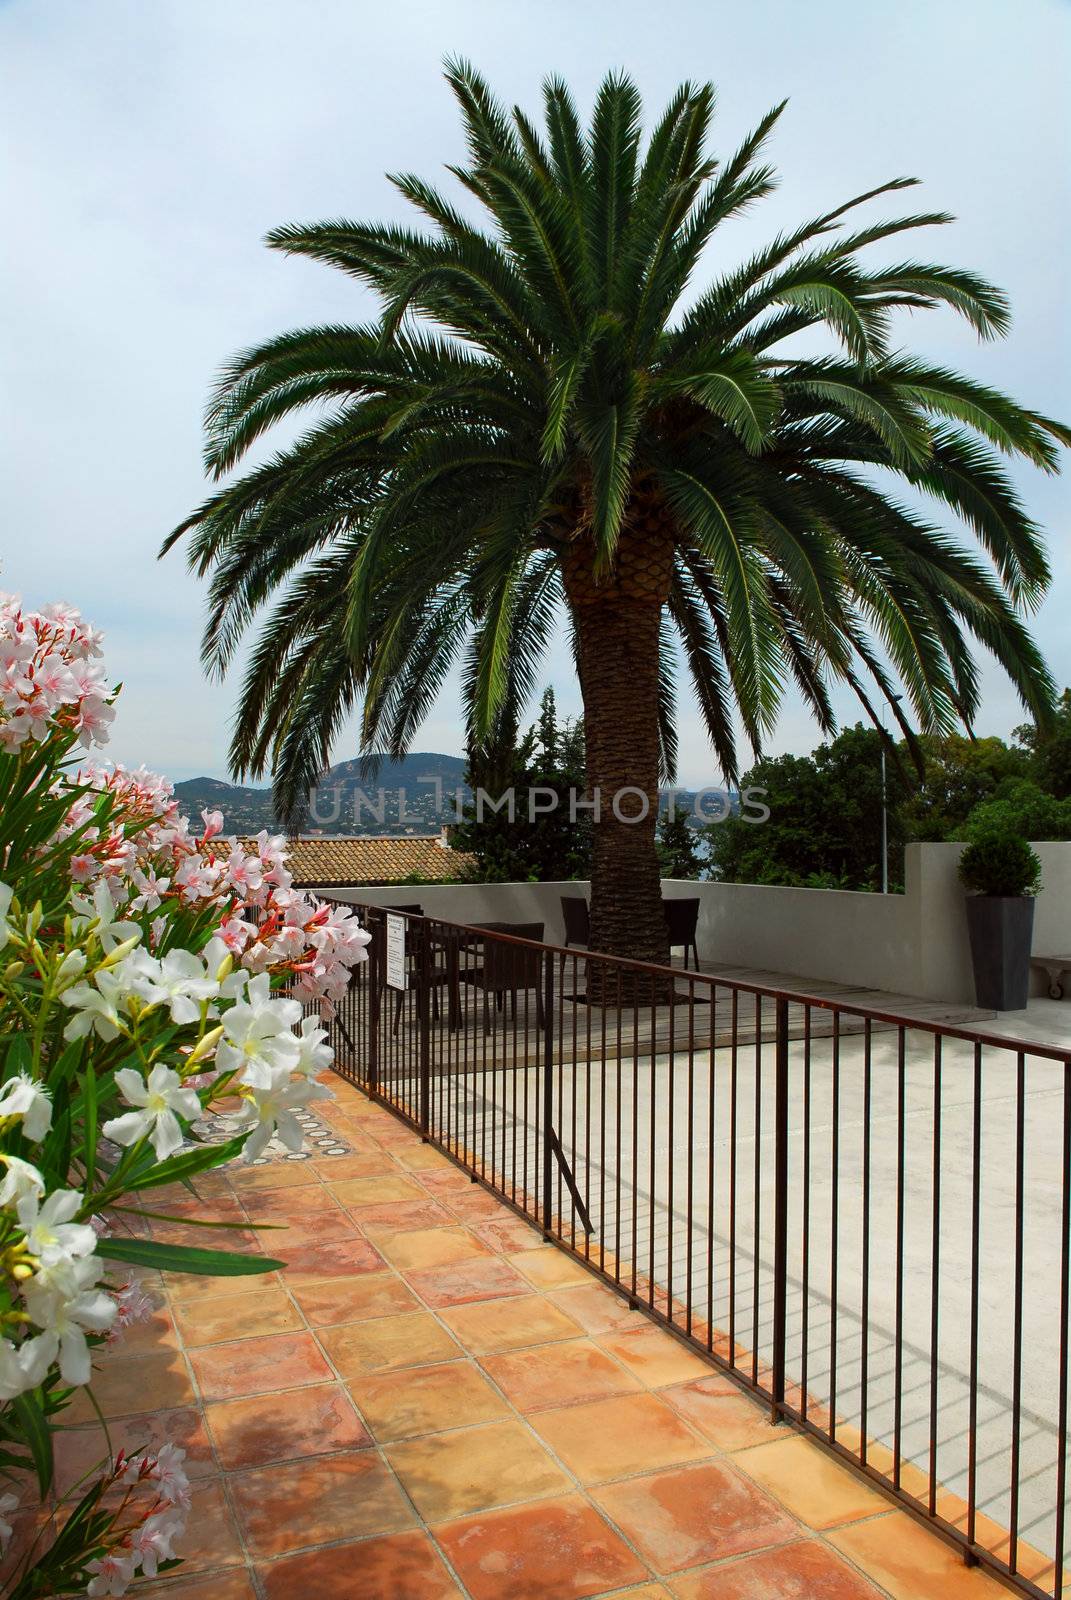 Courtyard of mediterranean villa in French Riviera